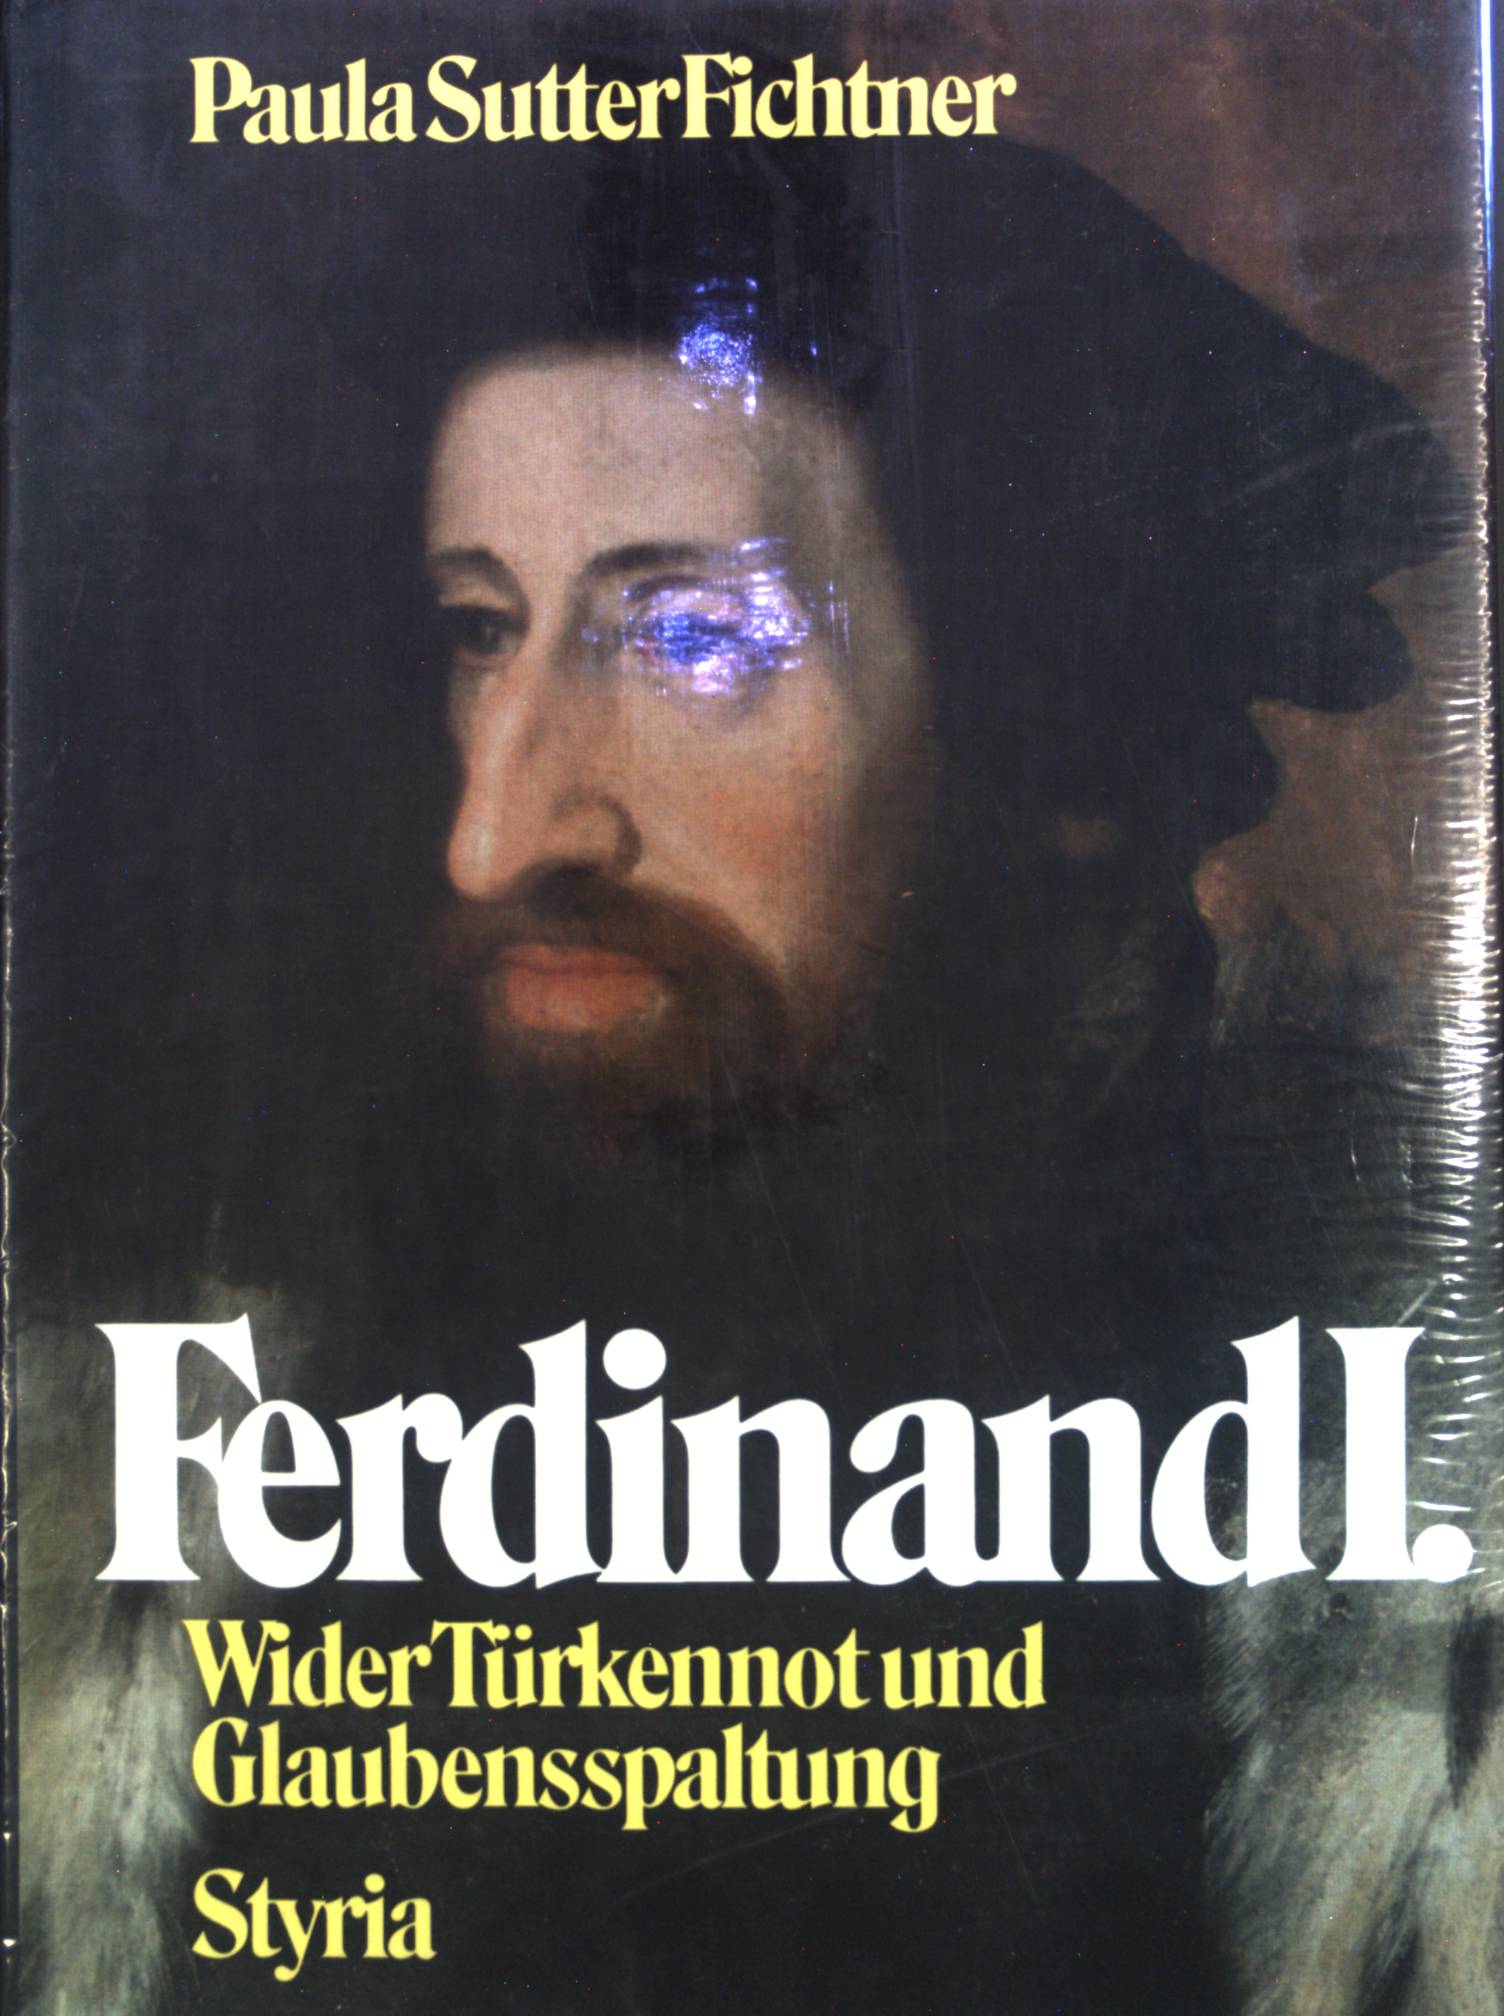 Ferdinand I. : wider Türken u. Glaubensspaltung. - Fichtner, Paula Sutter